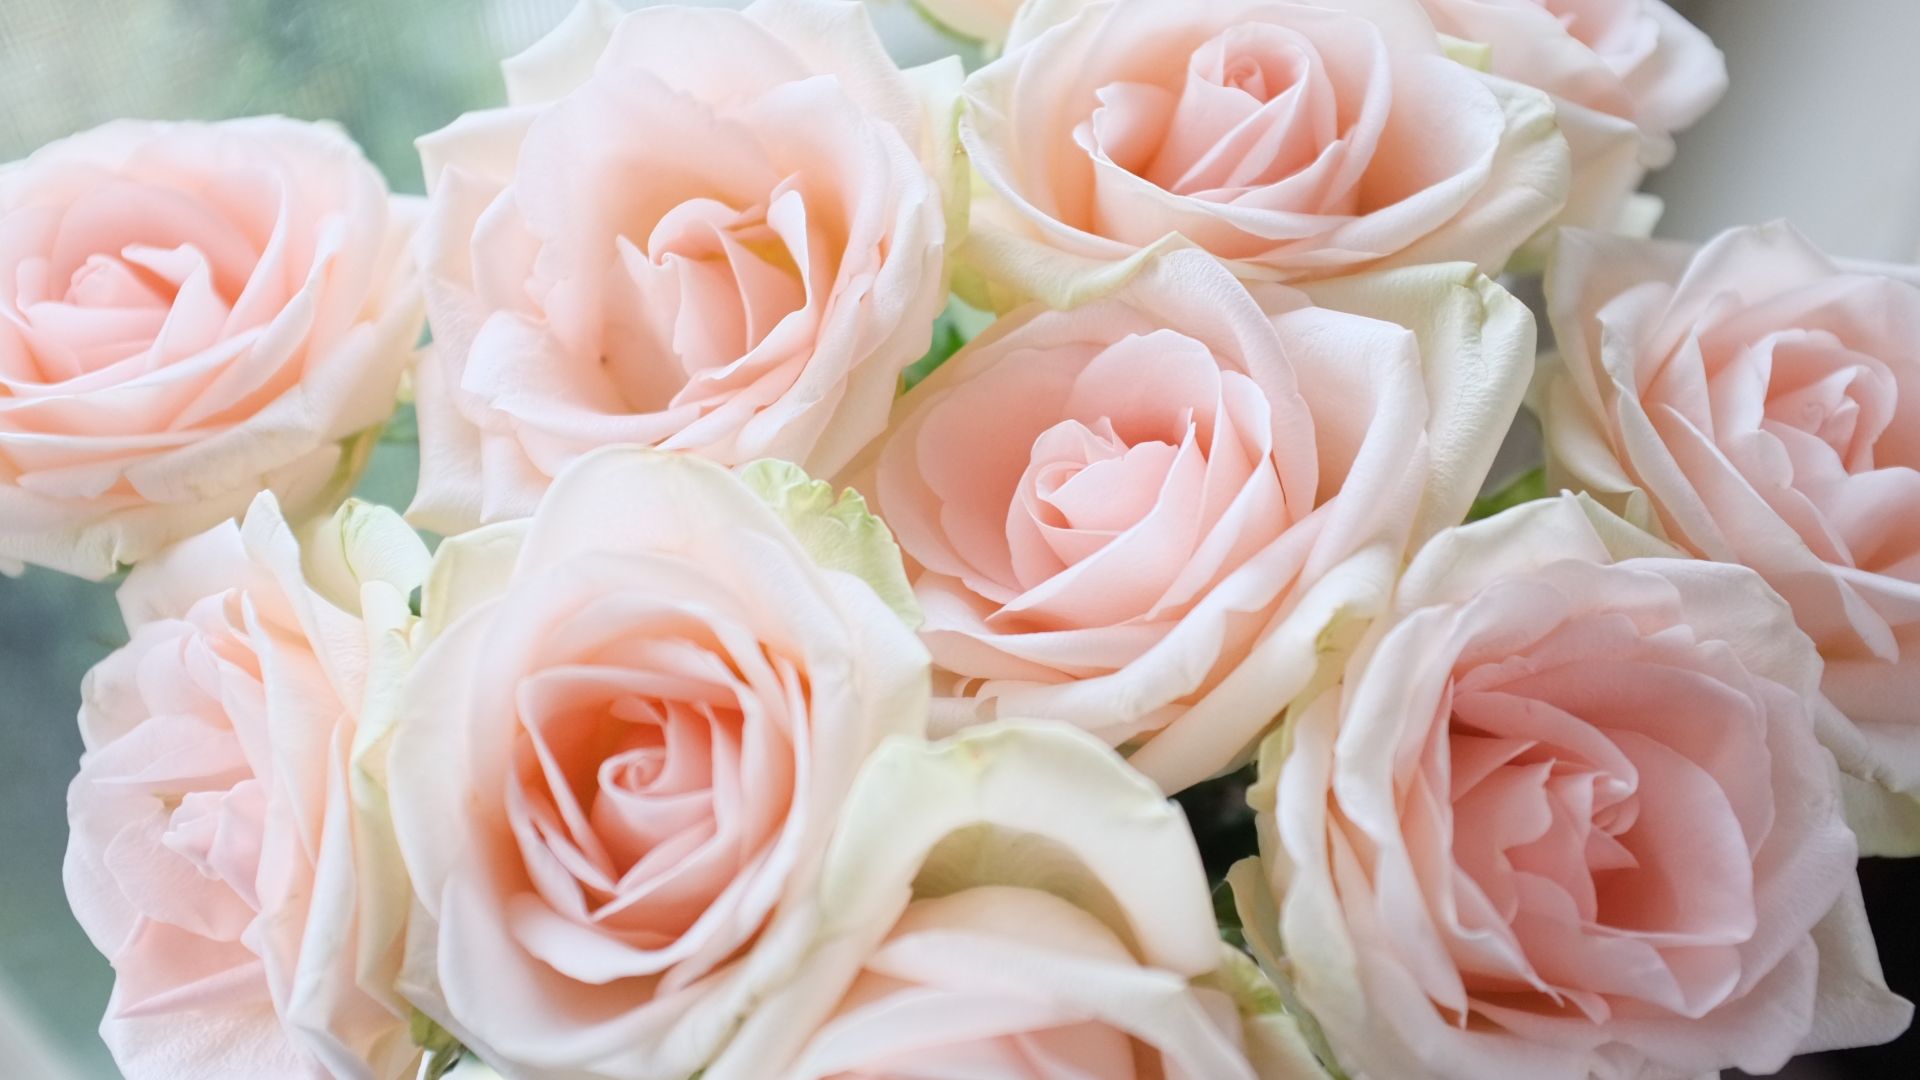 唯美的粉色玫瑰花高清壁纸下载-壁纸图片大全